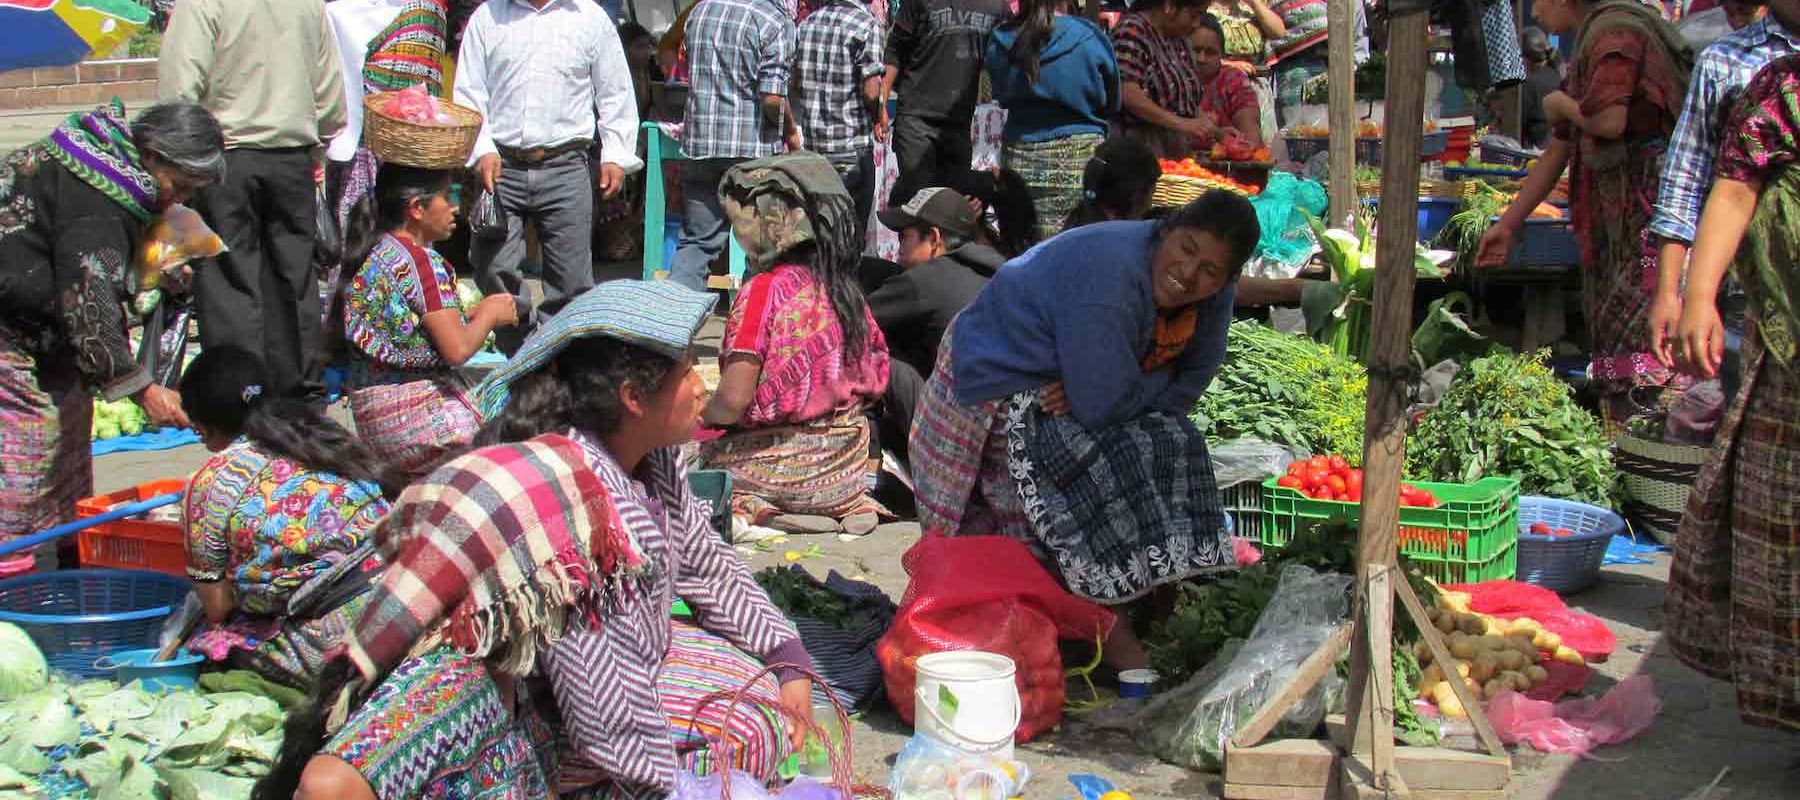 Guatemala Chichicastenango Market